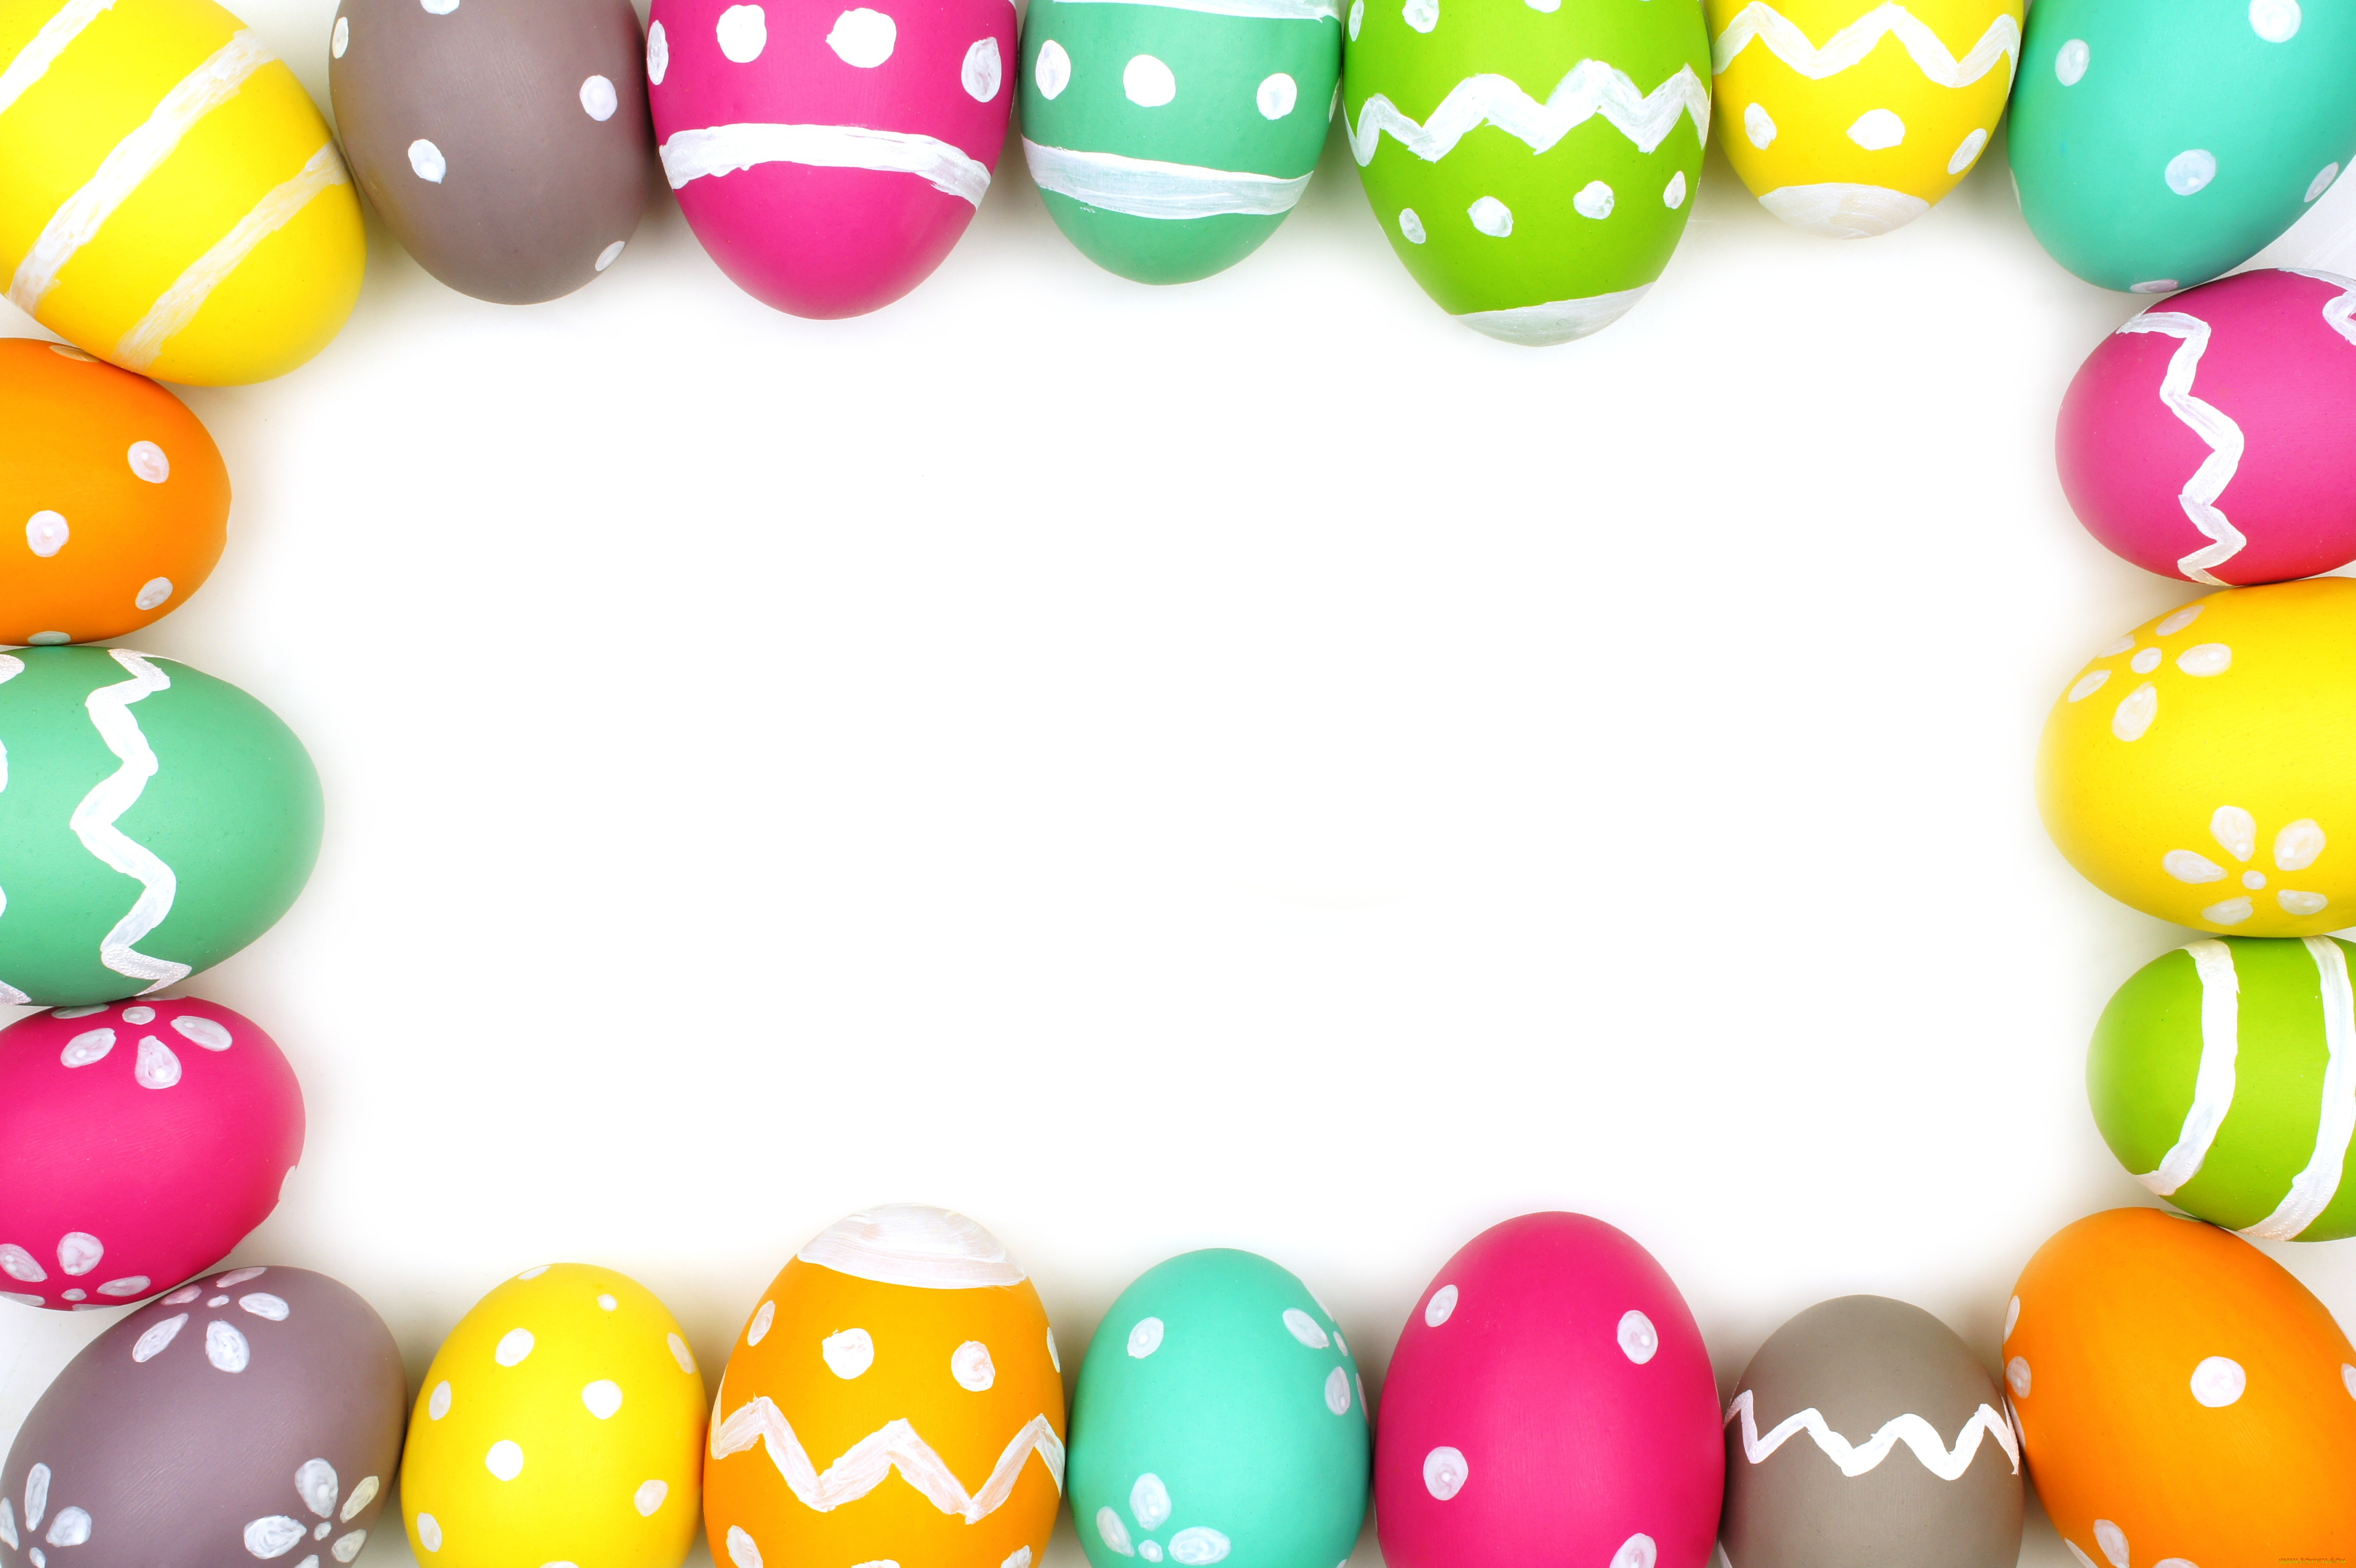 праздничные, пасха, eggs, easter, рамка, colorful, decoration, spring, happy, frame, яйца, крашеные